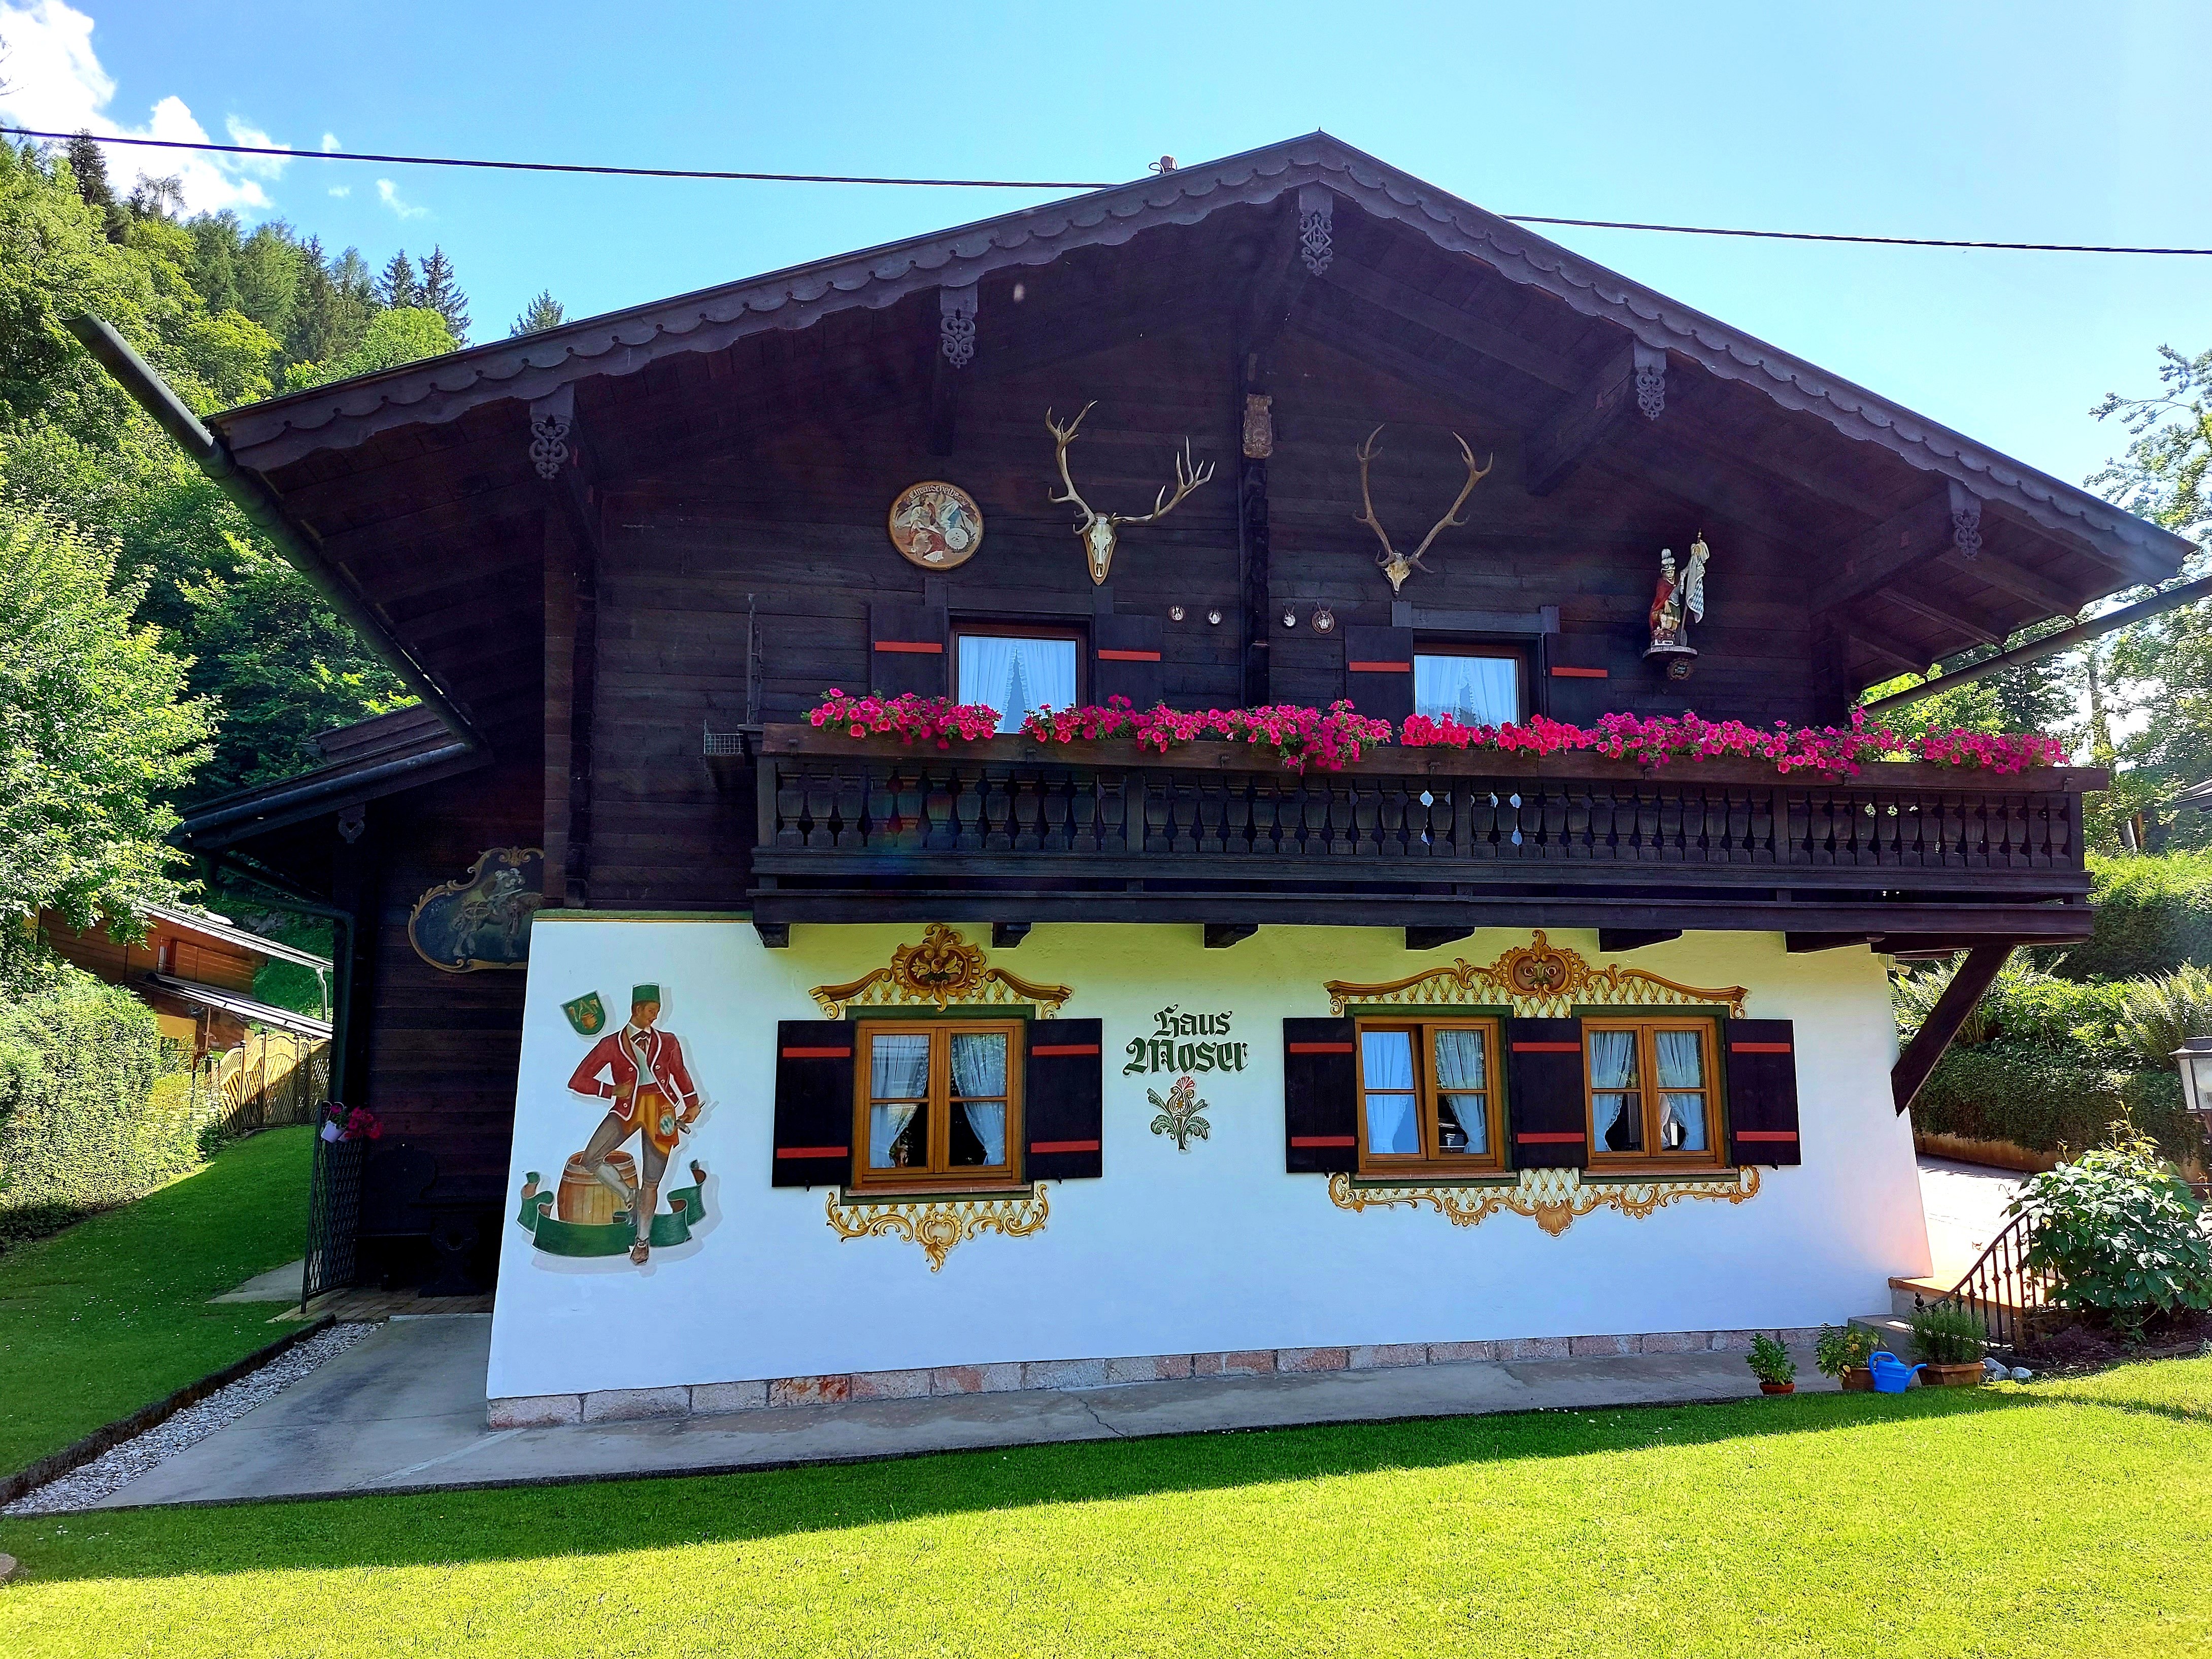 Ferienwohnungen Haus Moser (DE Berchtesgaden). Fer Ferienwohnung in den Alpen